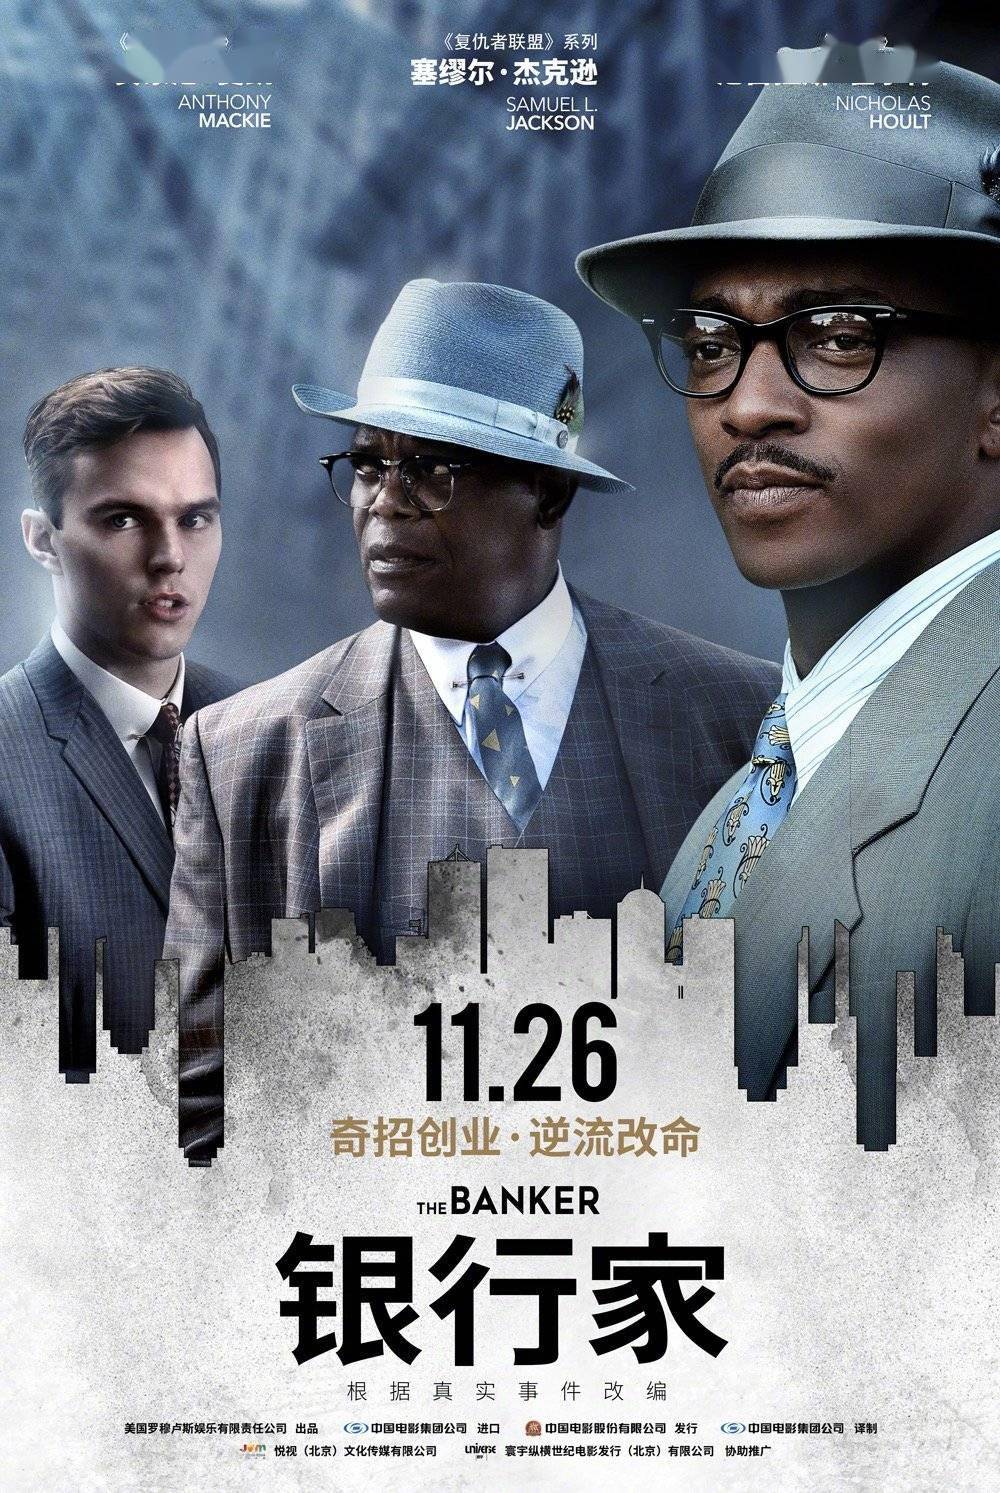 《银行家》曝人物海报 再现黑人企业家真实创业传奇